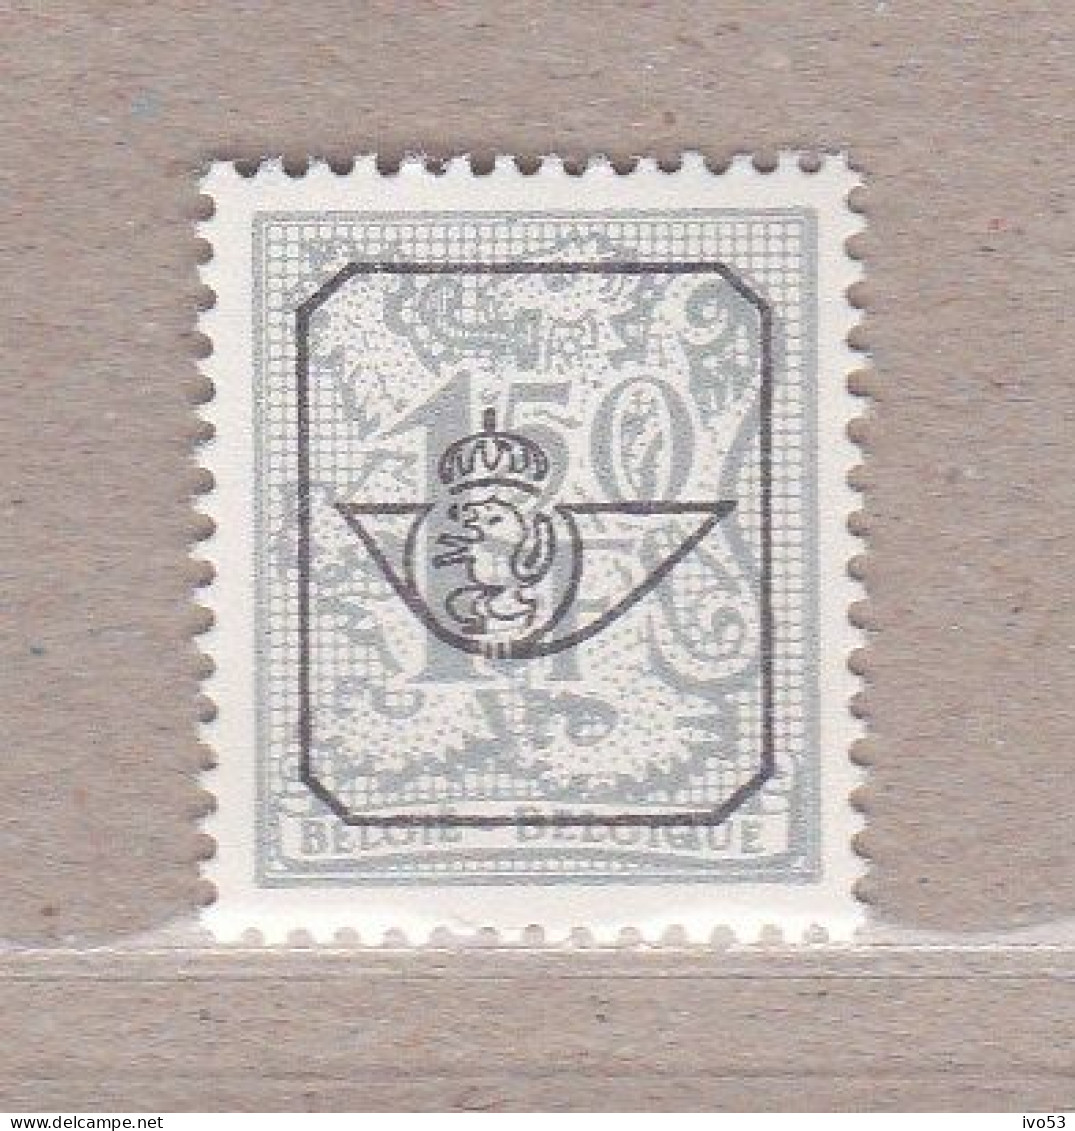 1977nr PRE801** Postfris,Heraldieke Leeuw 1,5fr. - Typo Precancels 1967-85 (New Numerals)